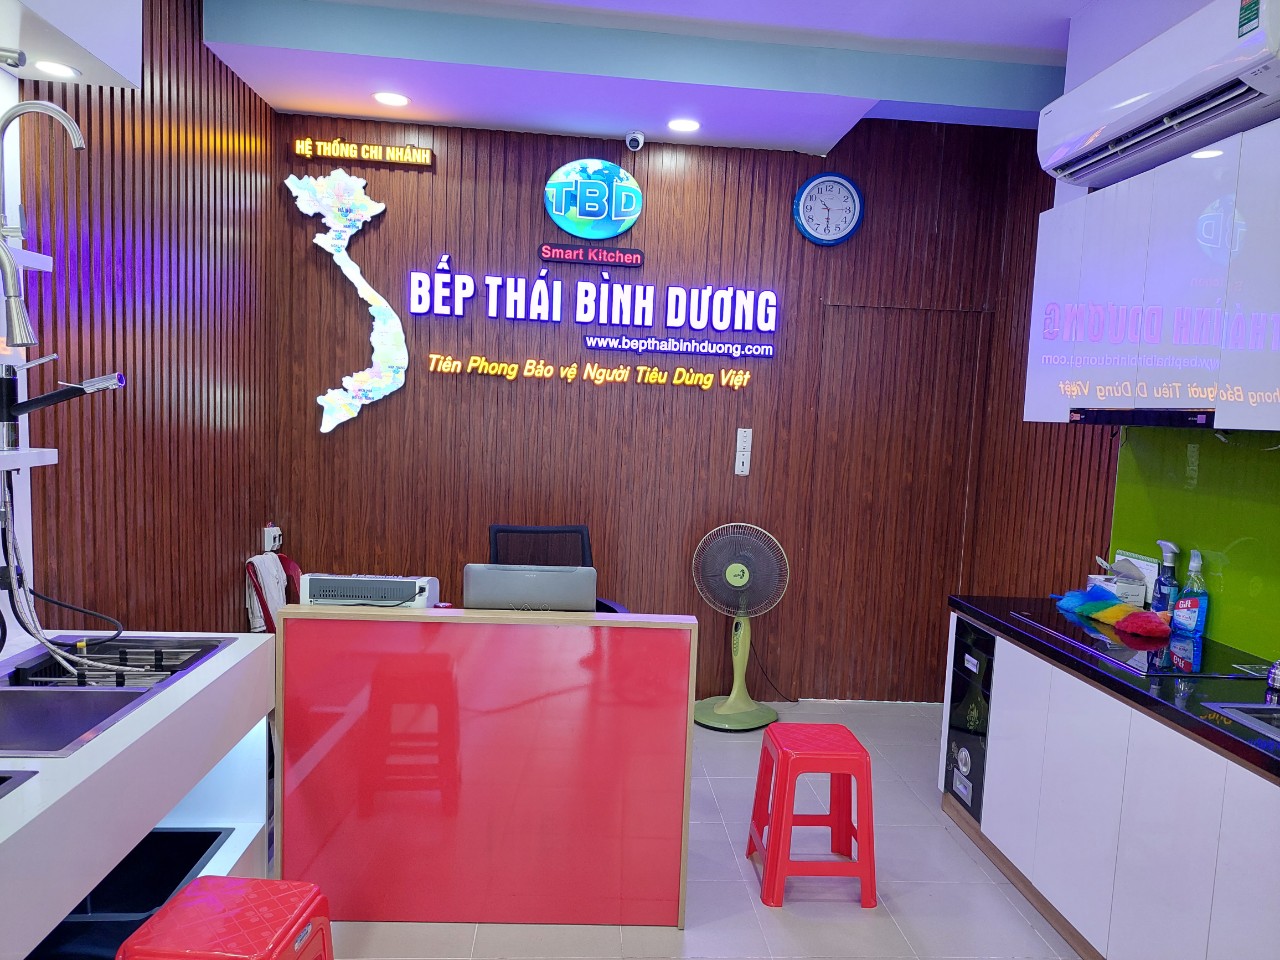 Địa chỉ mua lò vi sóng KAFF chính hãng uy tín tại thành phố Hồ Chí Minh